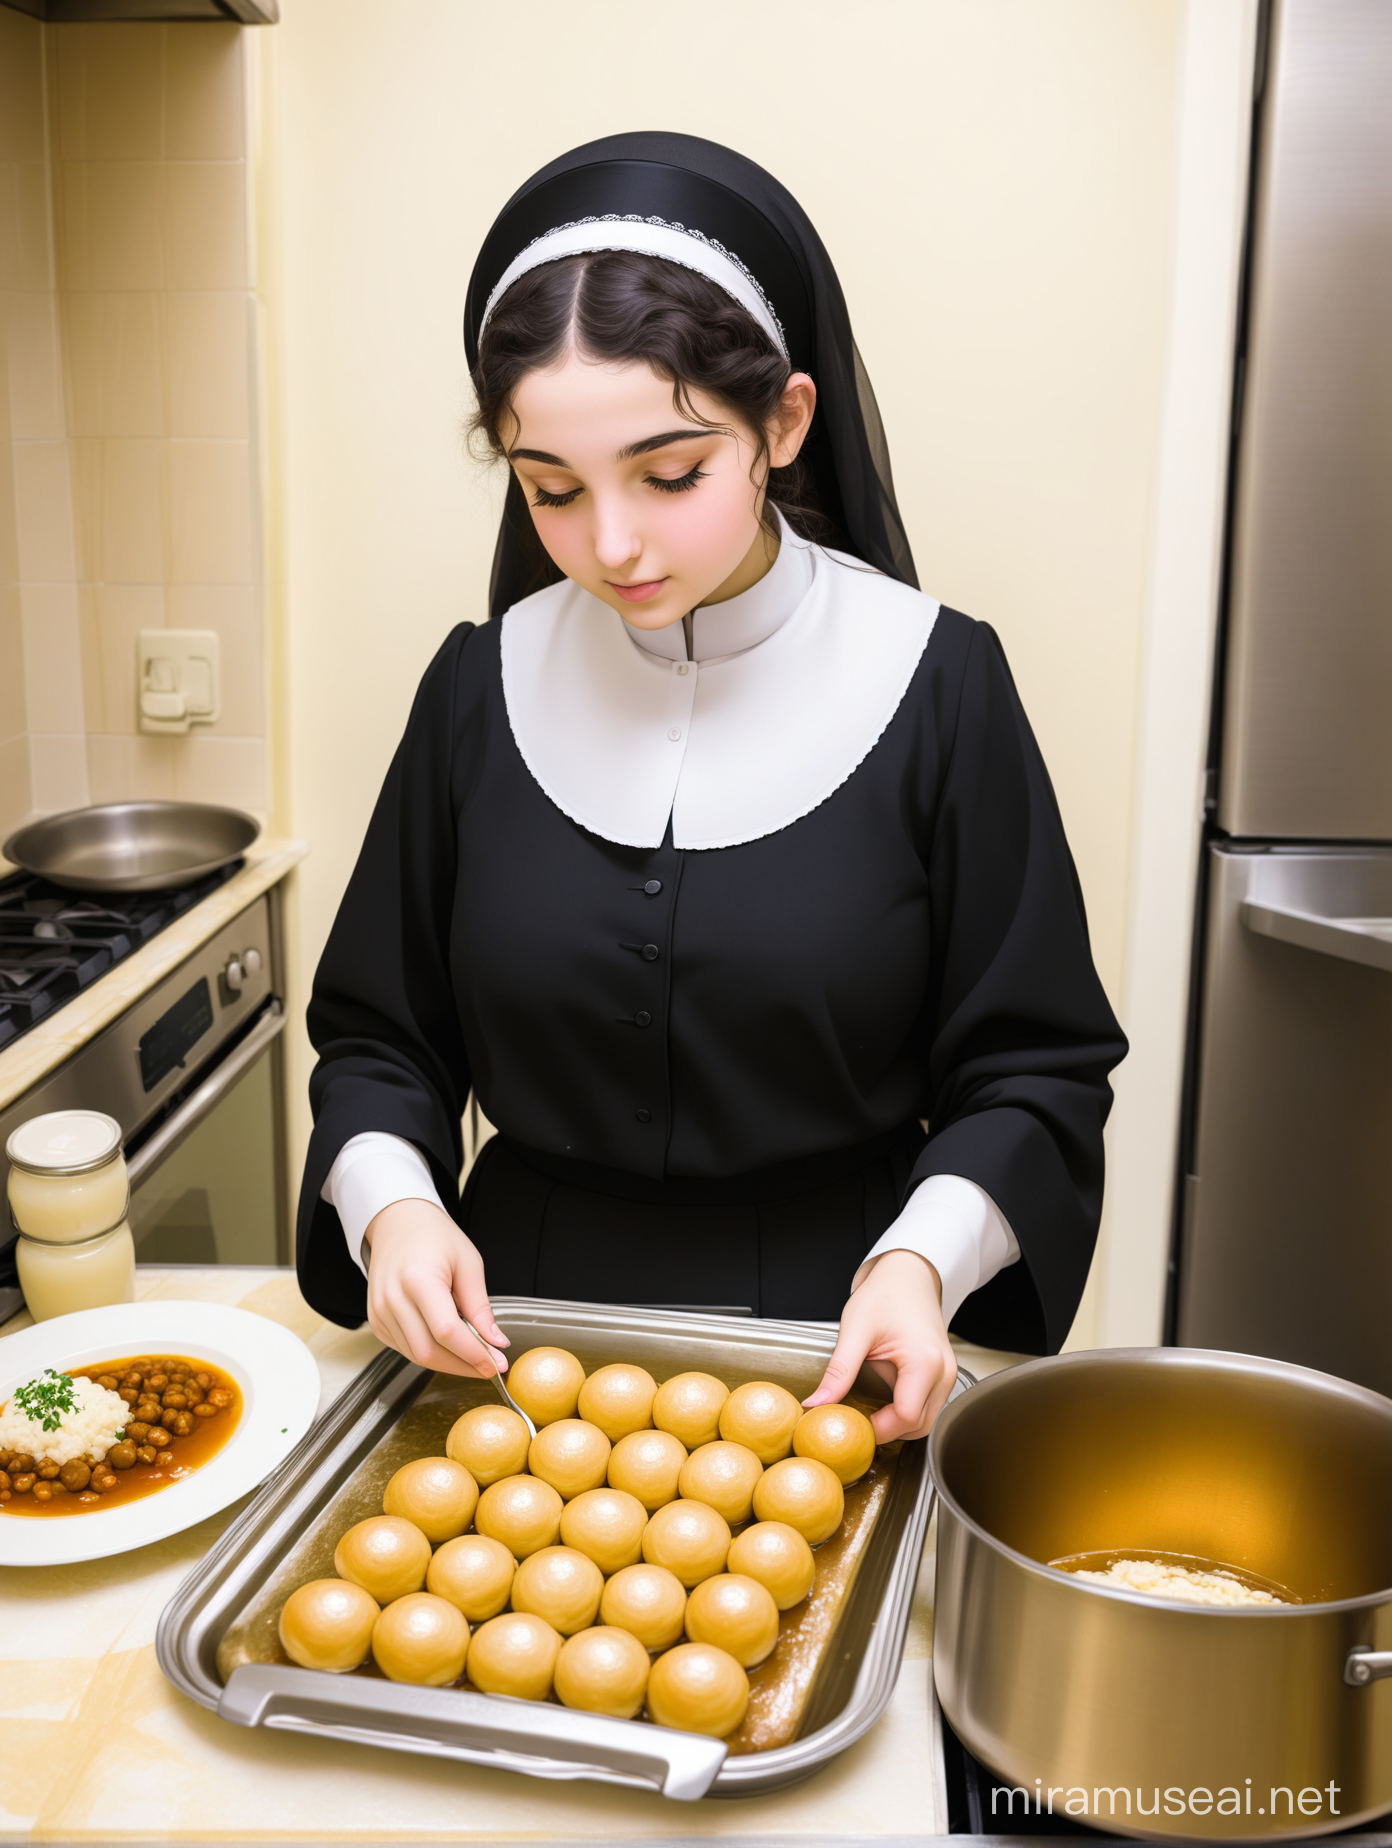 UltraOrthodox Jewish Girl Assisting in Shabbat Food Preparation